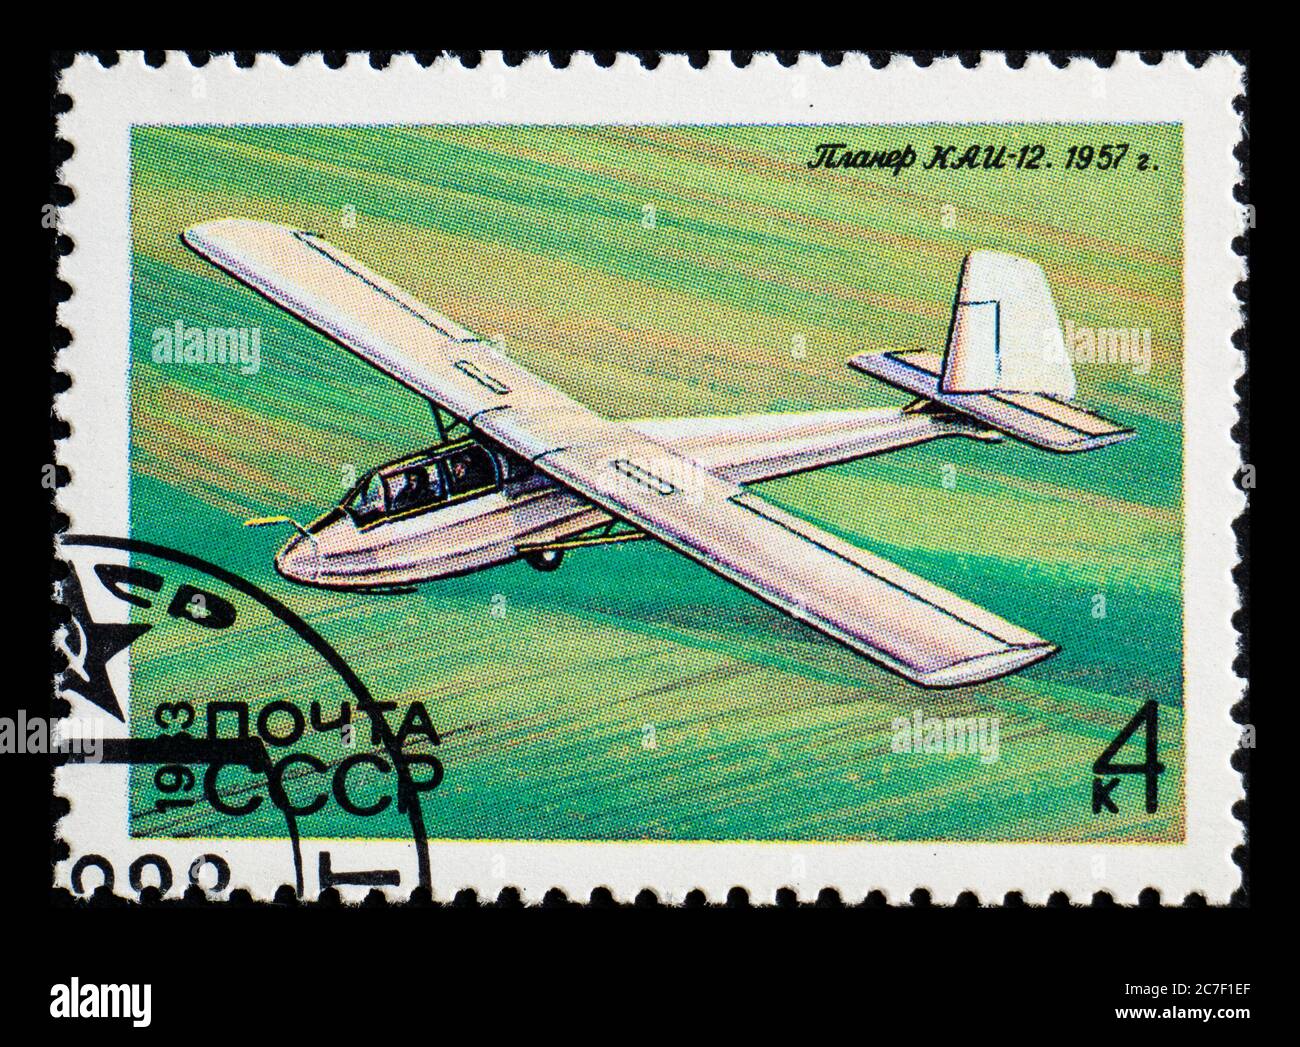 RUSSLAND, UdSSR - UM 1983: Eine Briefmarke aus der UdSSR mit Segelflugzeug Kai-12 Primorets 1957 Stockfoto